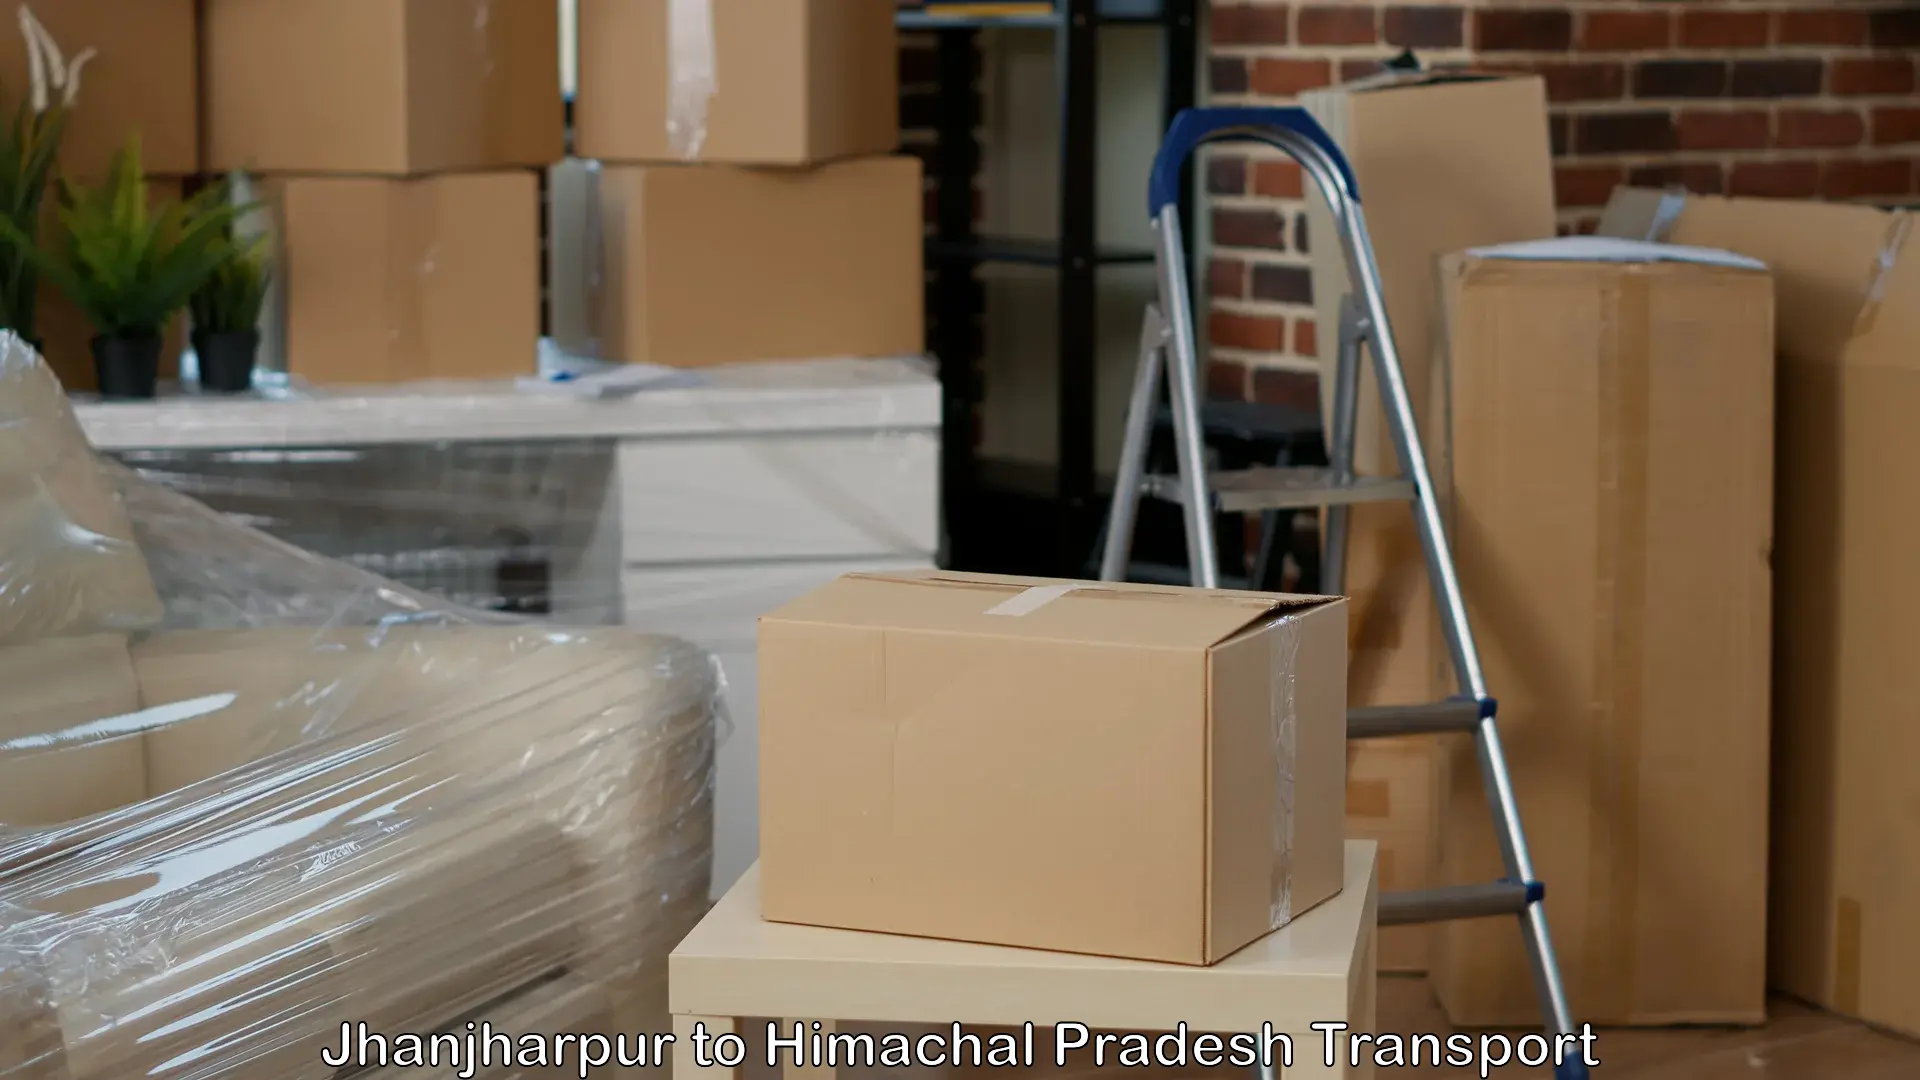 Shipping partner Jhanjharpur to Ranital